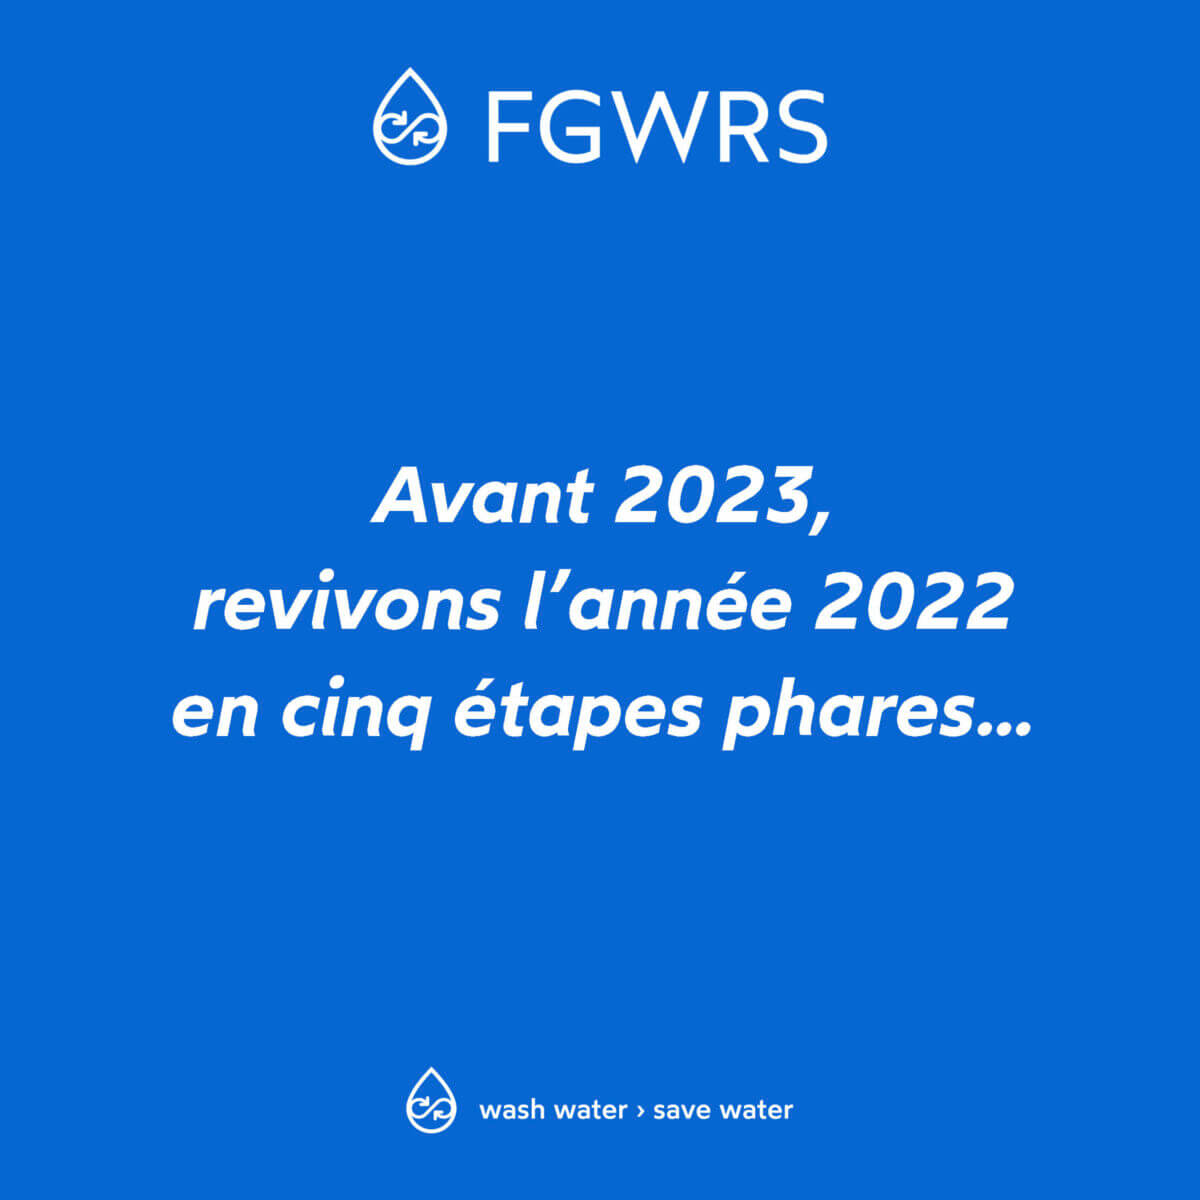 Cinq étapes Phares Pour FGWRS En 2022